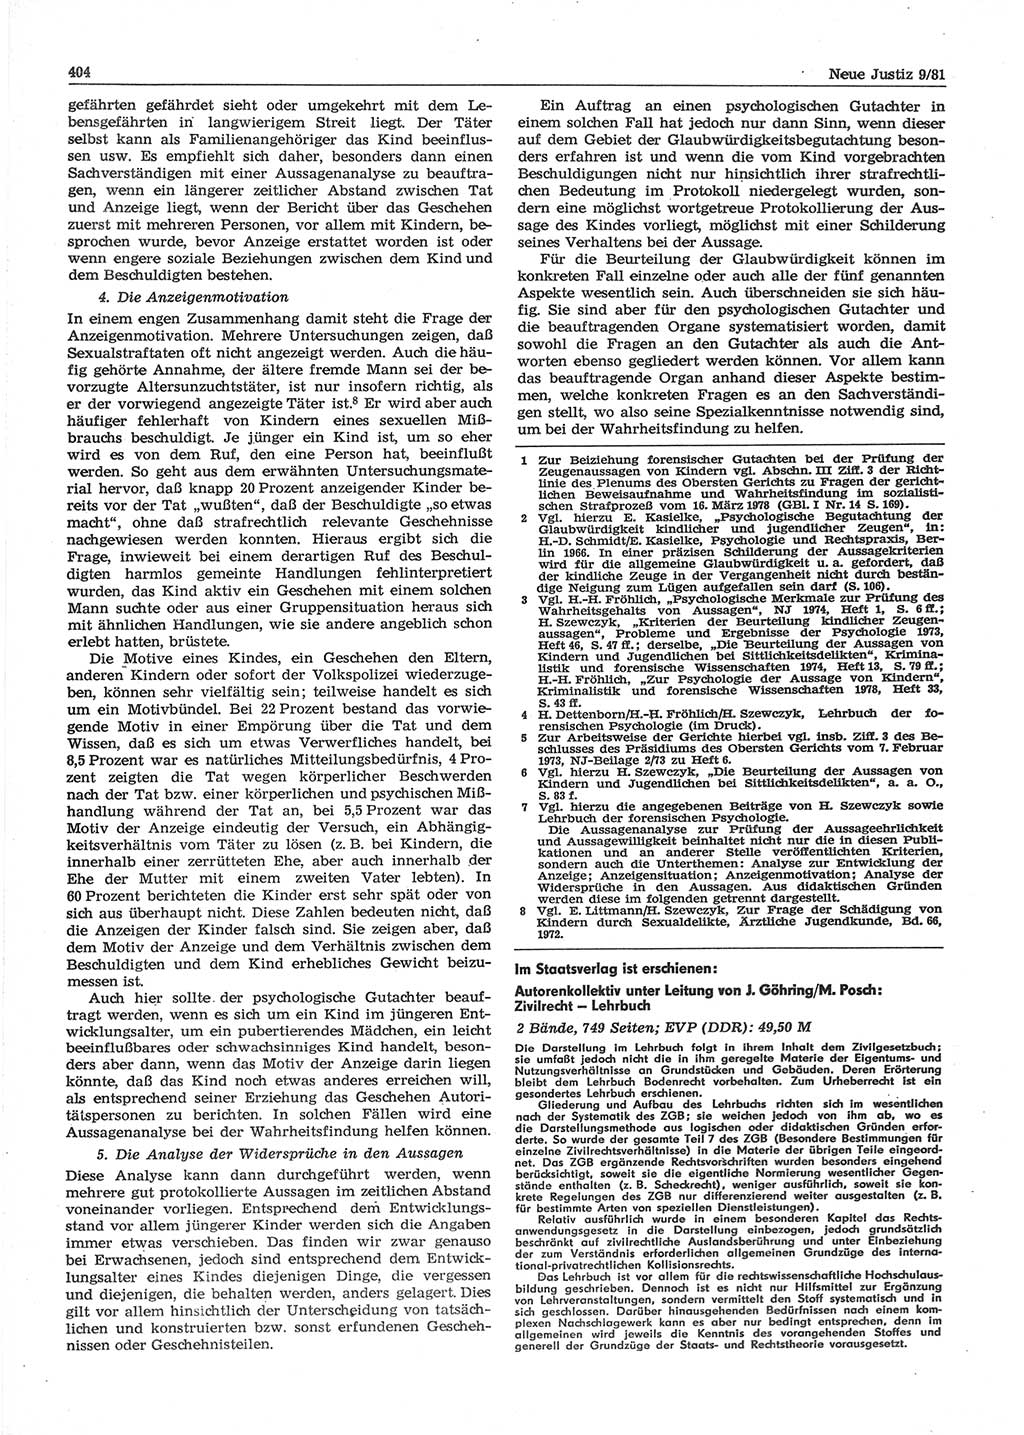 Neue Justiz (NJ), Zeitschrift für sozialistisches Recht und Gesetzlichkeit [Deutsche Demokratische Republik (DDR)], 35. Jahrgang 1981, Seite 404 (NJ DDR 1981, S. 404)